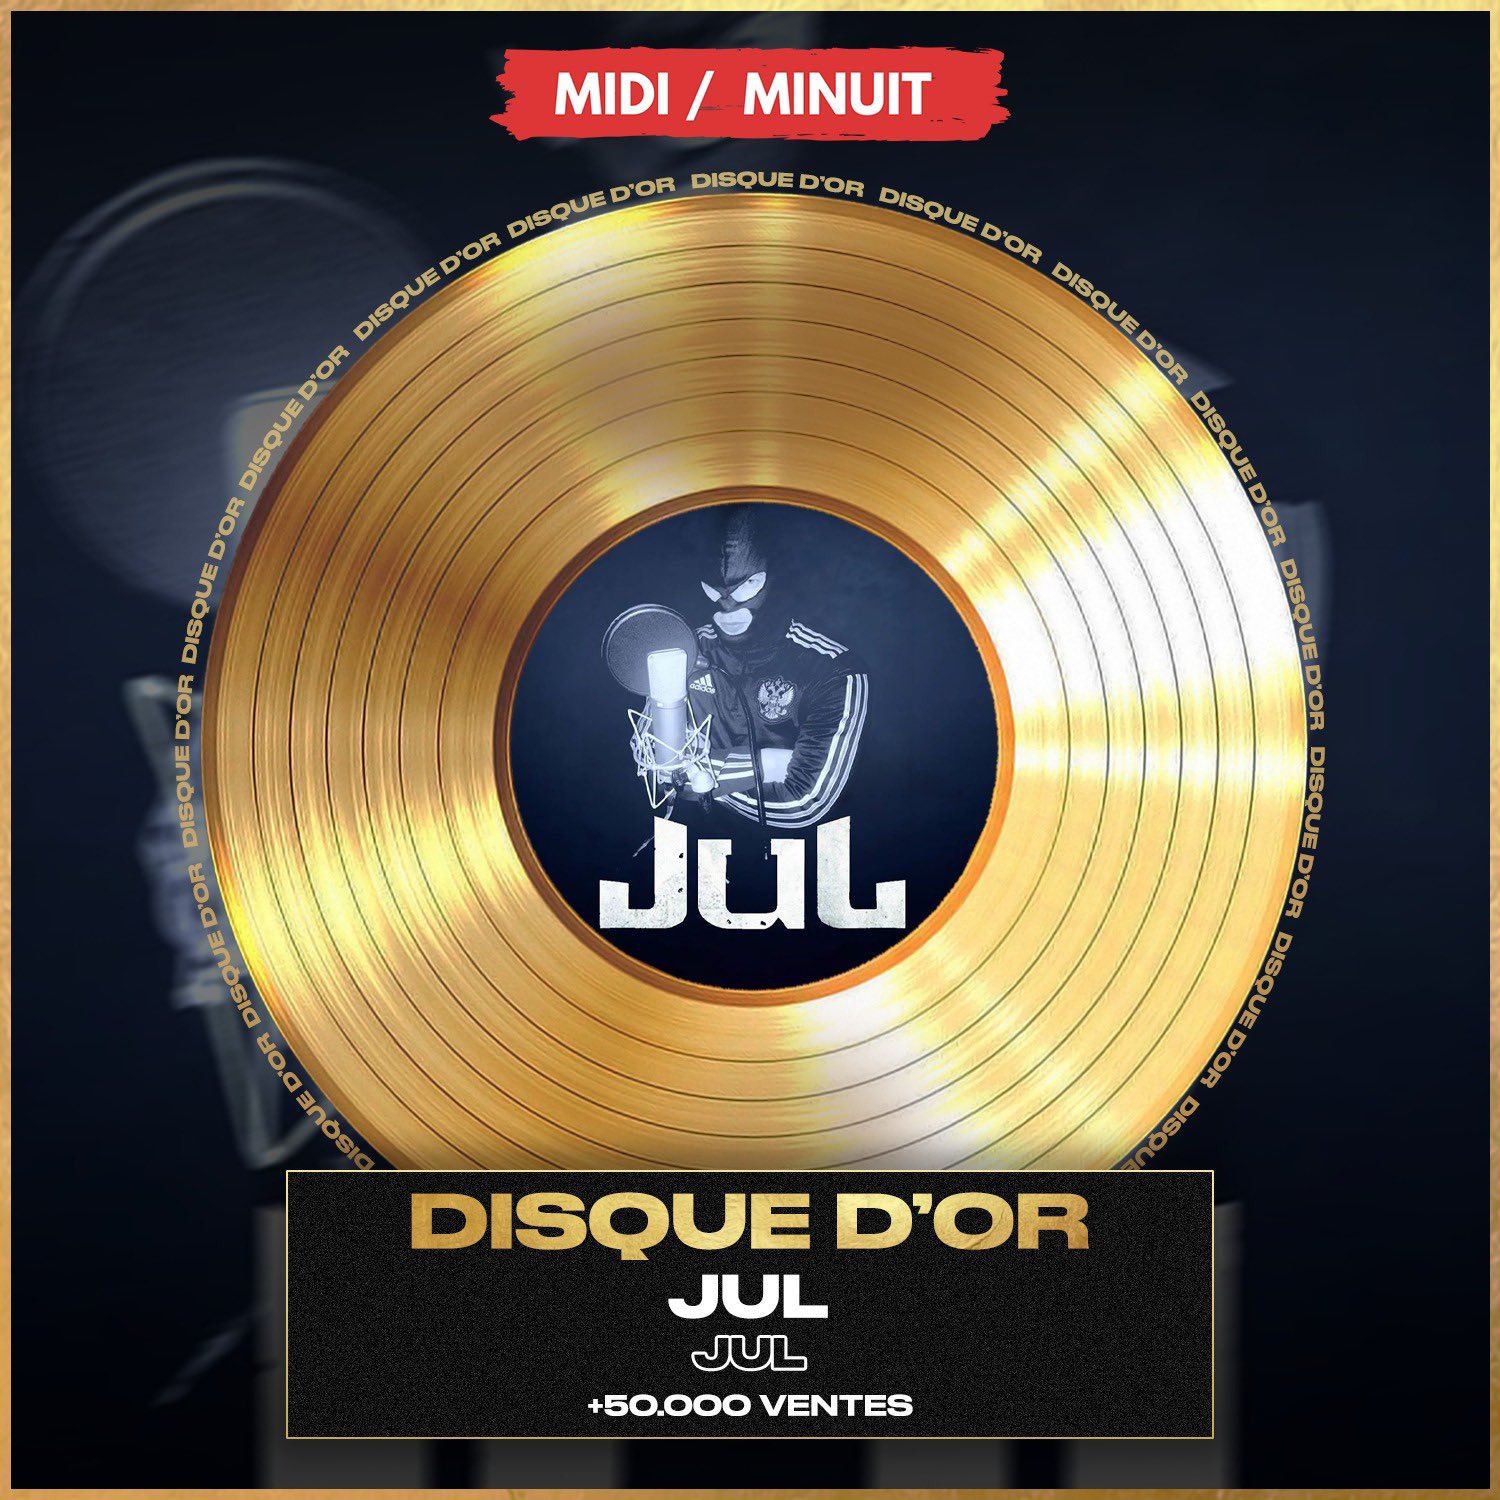 Disque d'or Jul - Album Gratuit Vol. 1 – T Certif